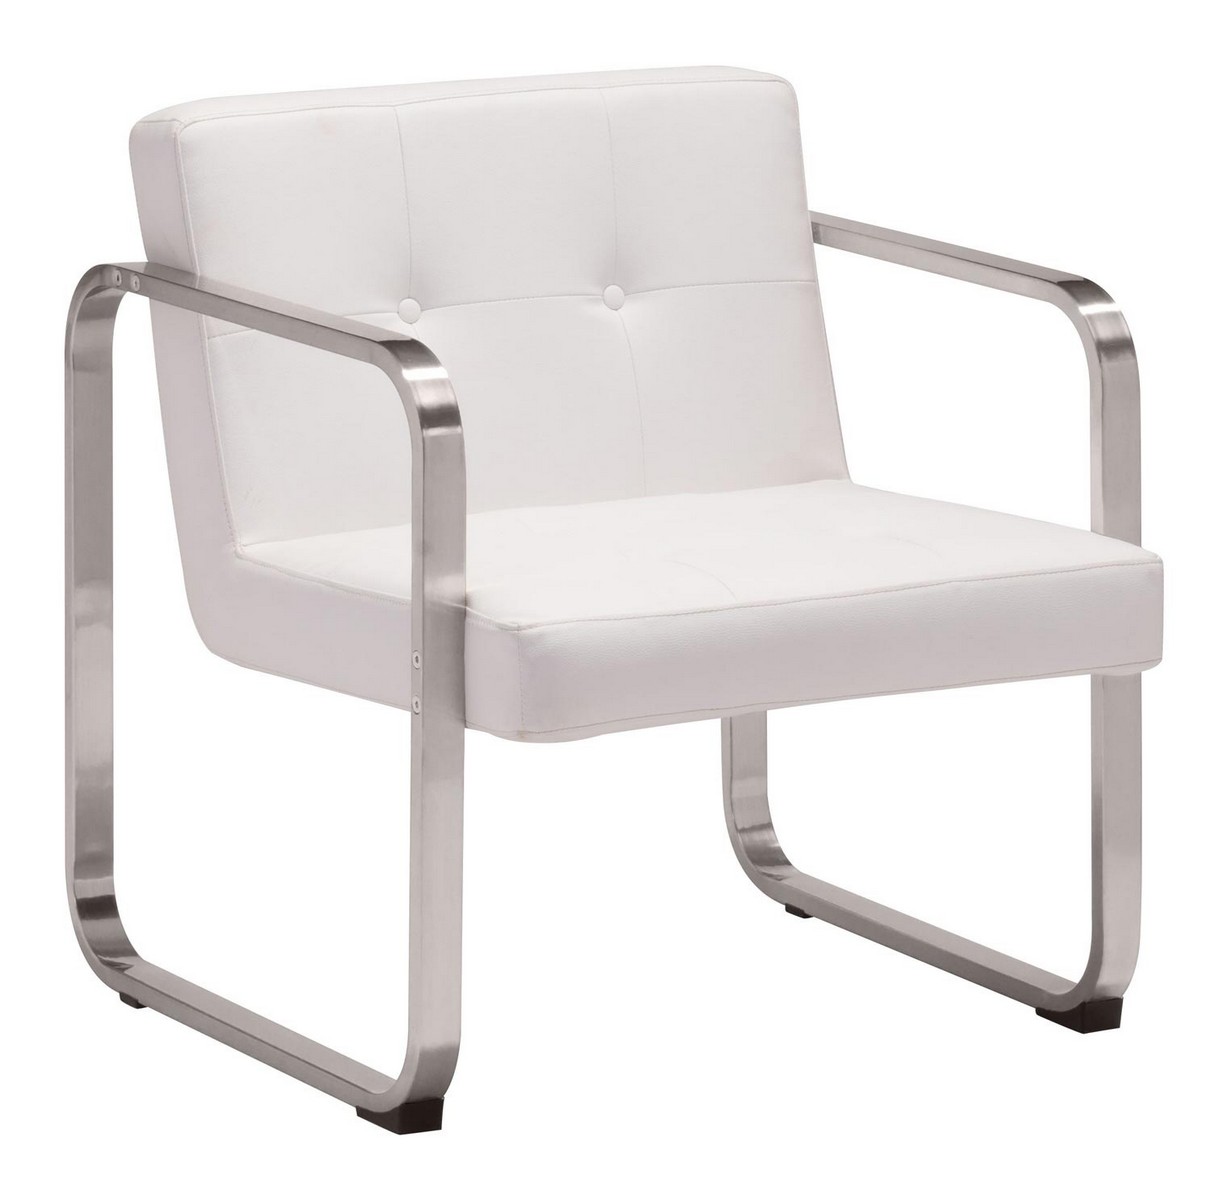 Zuo Modern Varietal Arm Chair - White